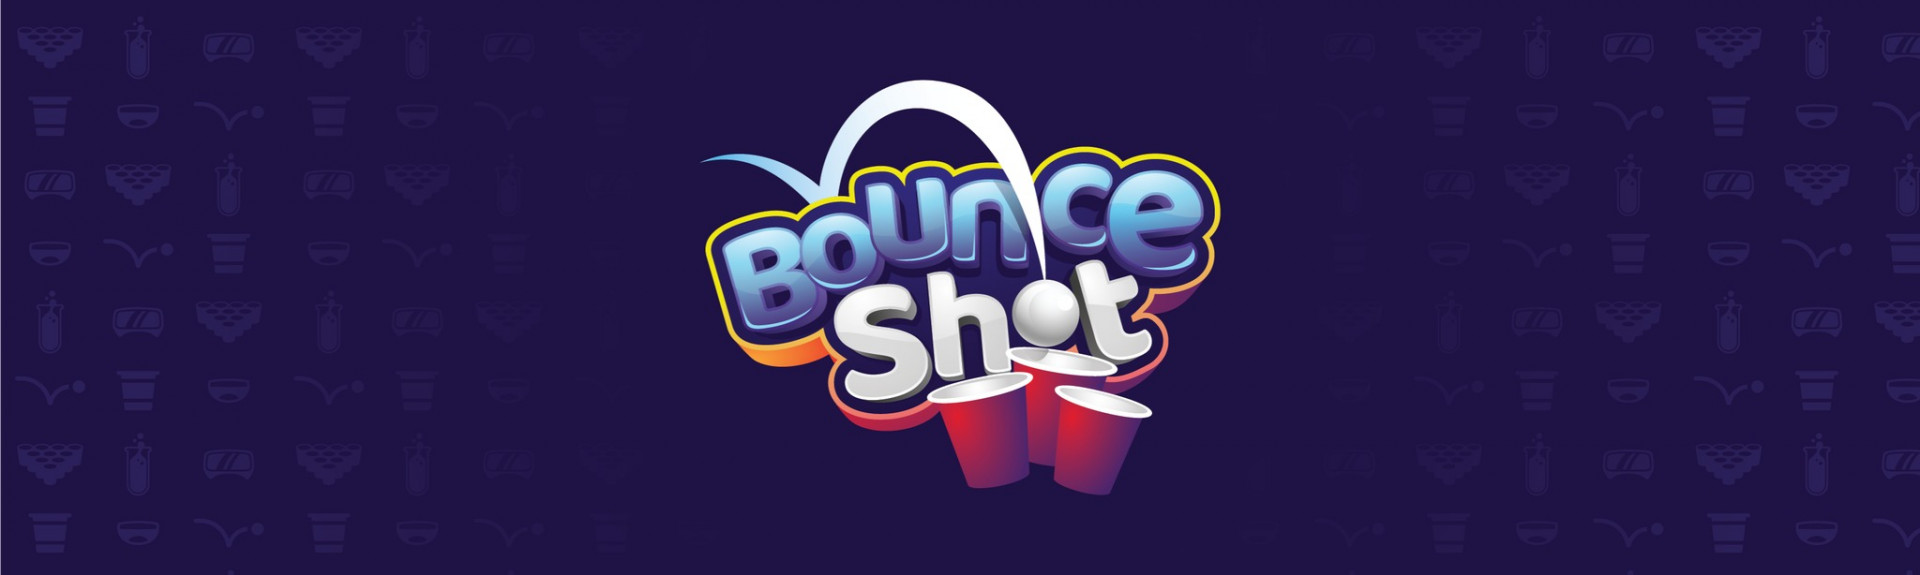 Bounce Shot